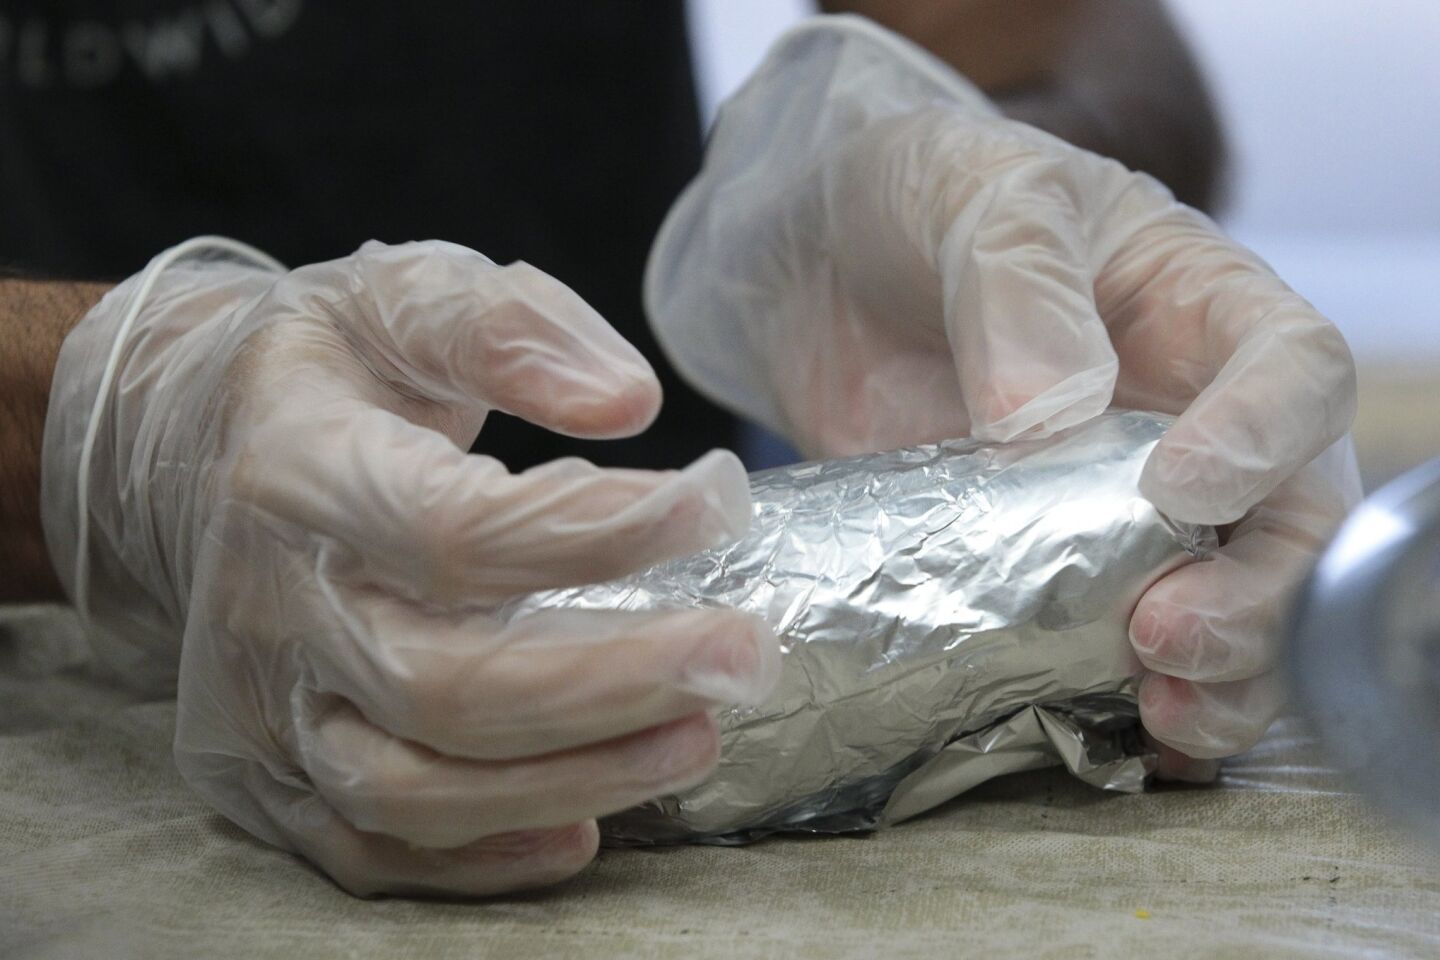 A Burrito Boyz volunteer wraps an egg burrito in foil.